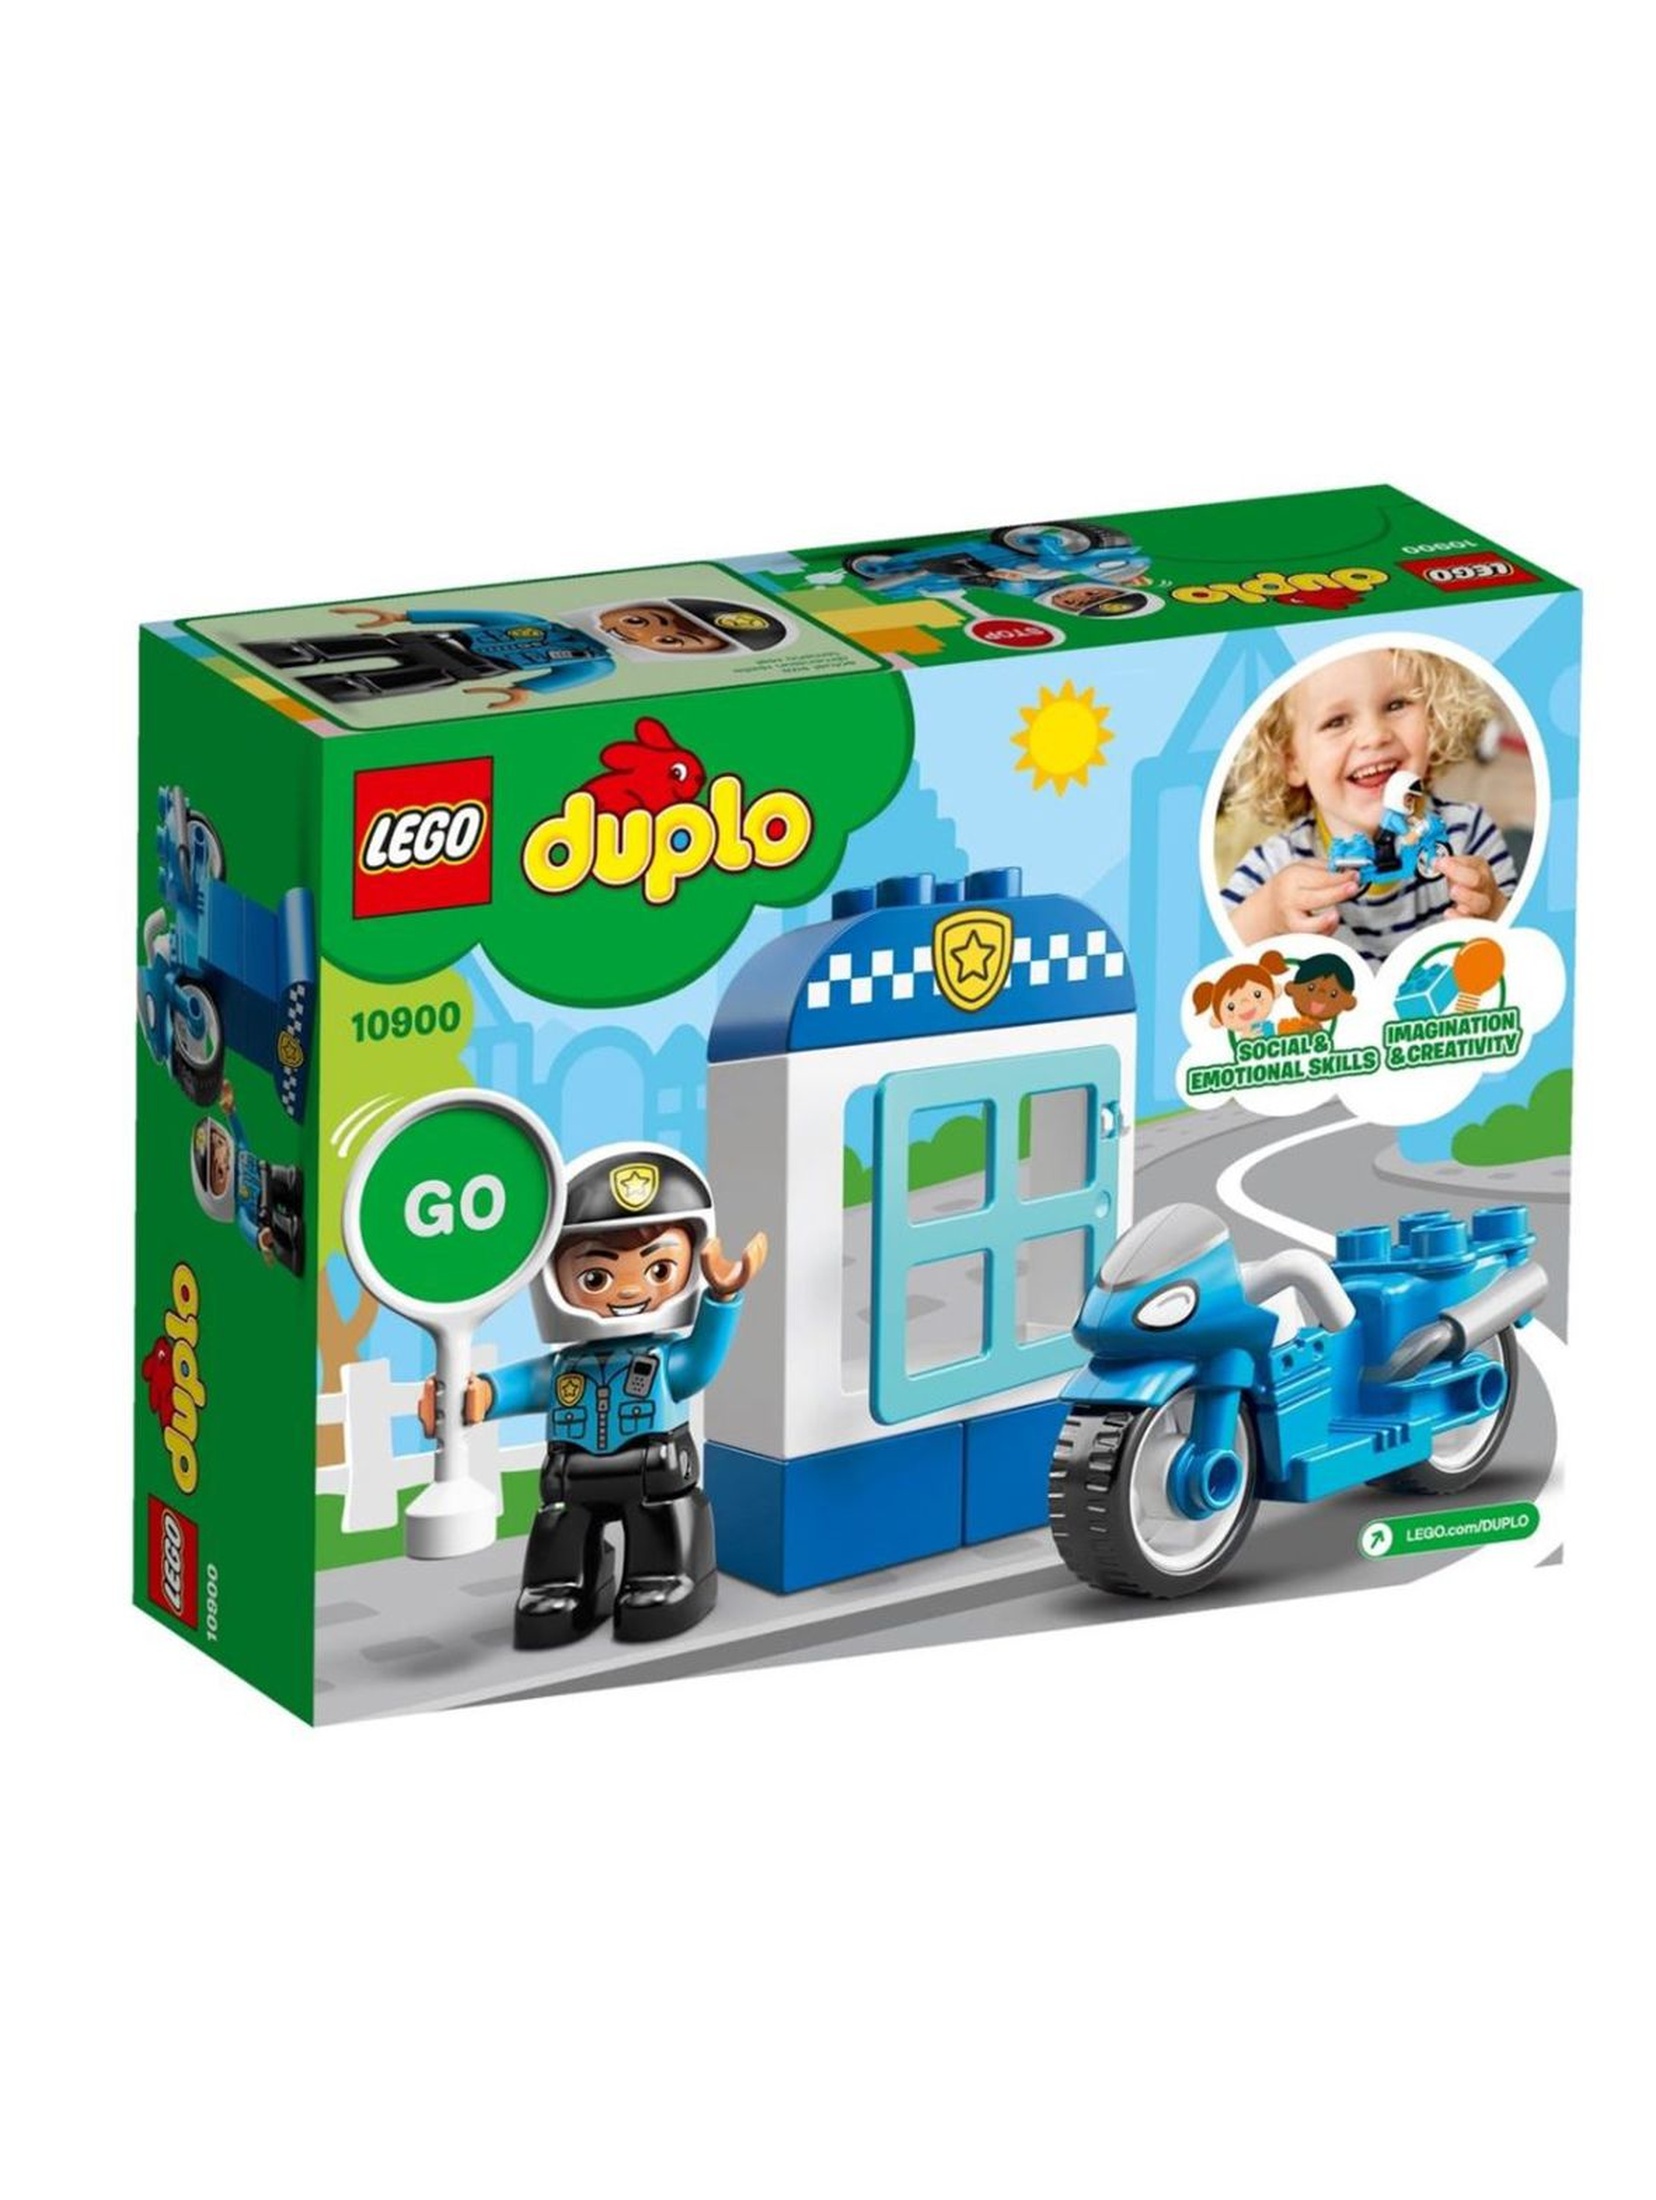 Lego  Duplo - Motocykl policyjny - 8 elementów wiek 2+